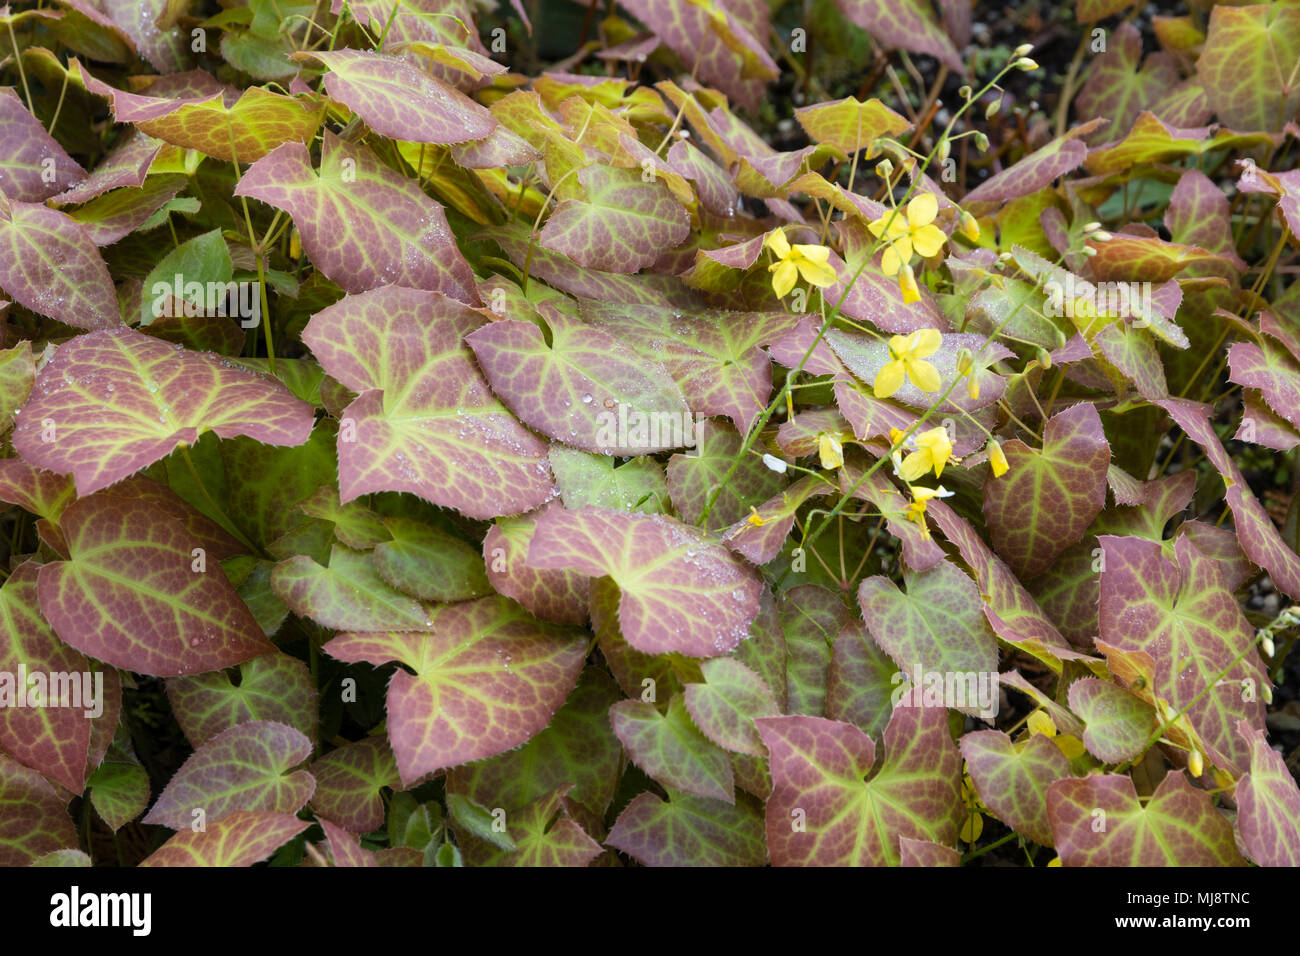 Bronze Frühling Laub der immerwährenden barrenwort, Epimedium pinnatum subsp Colchicum, kontrastiert mit dem kleinen gelben Blumen Stockfoto